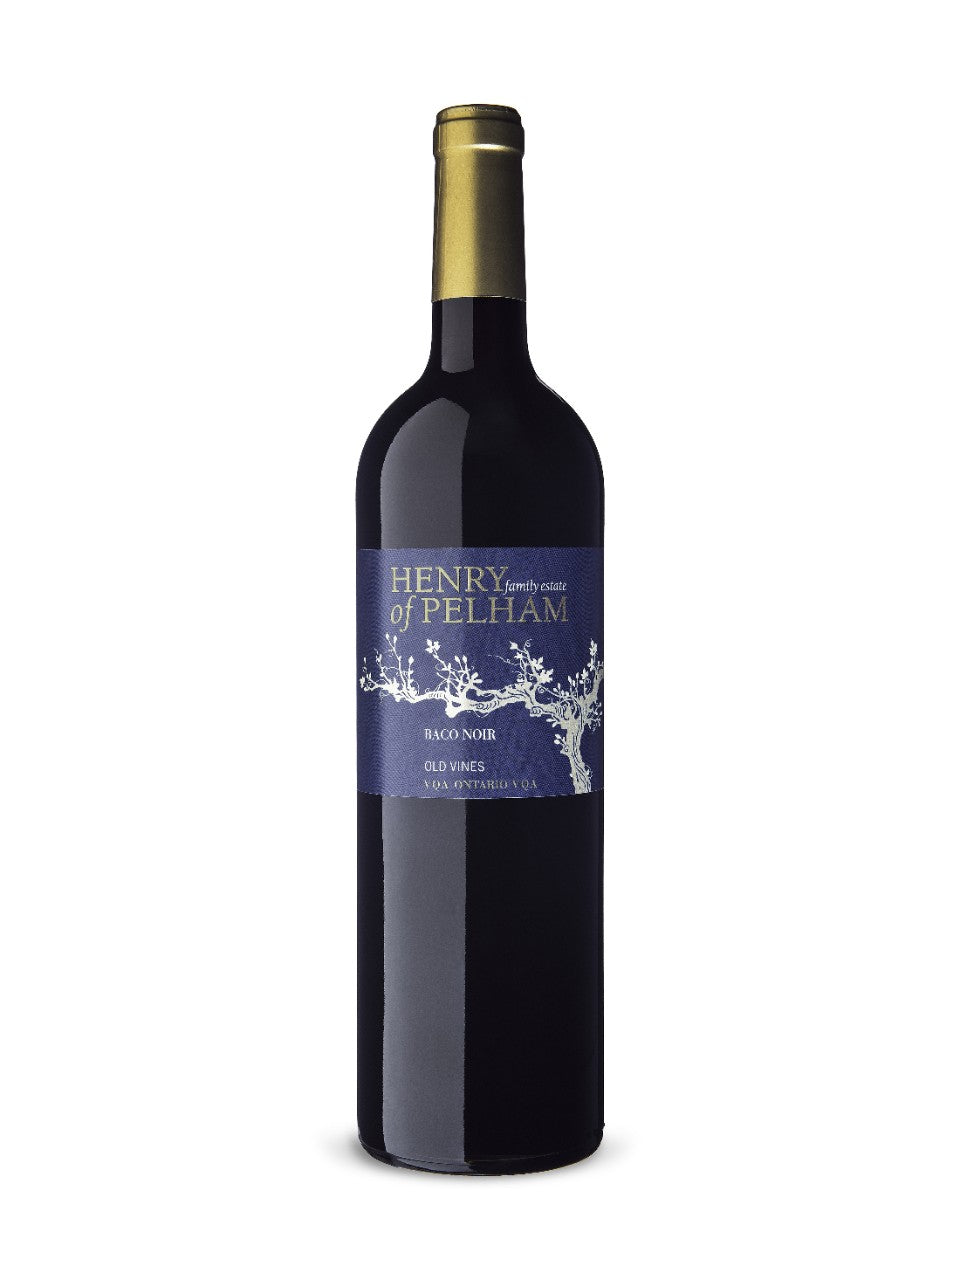 Henry of Pelham Baco Noir Old Vines VQA 750 ml bottle